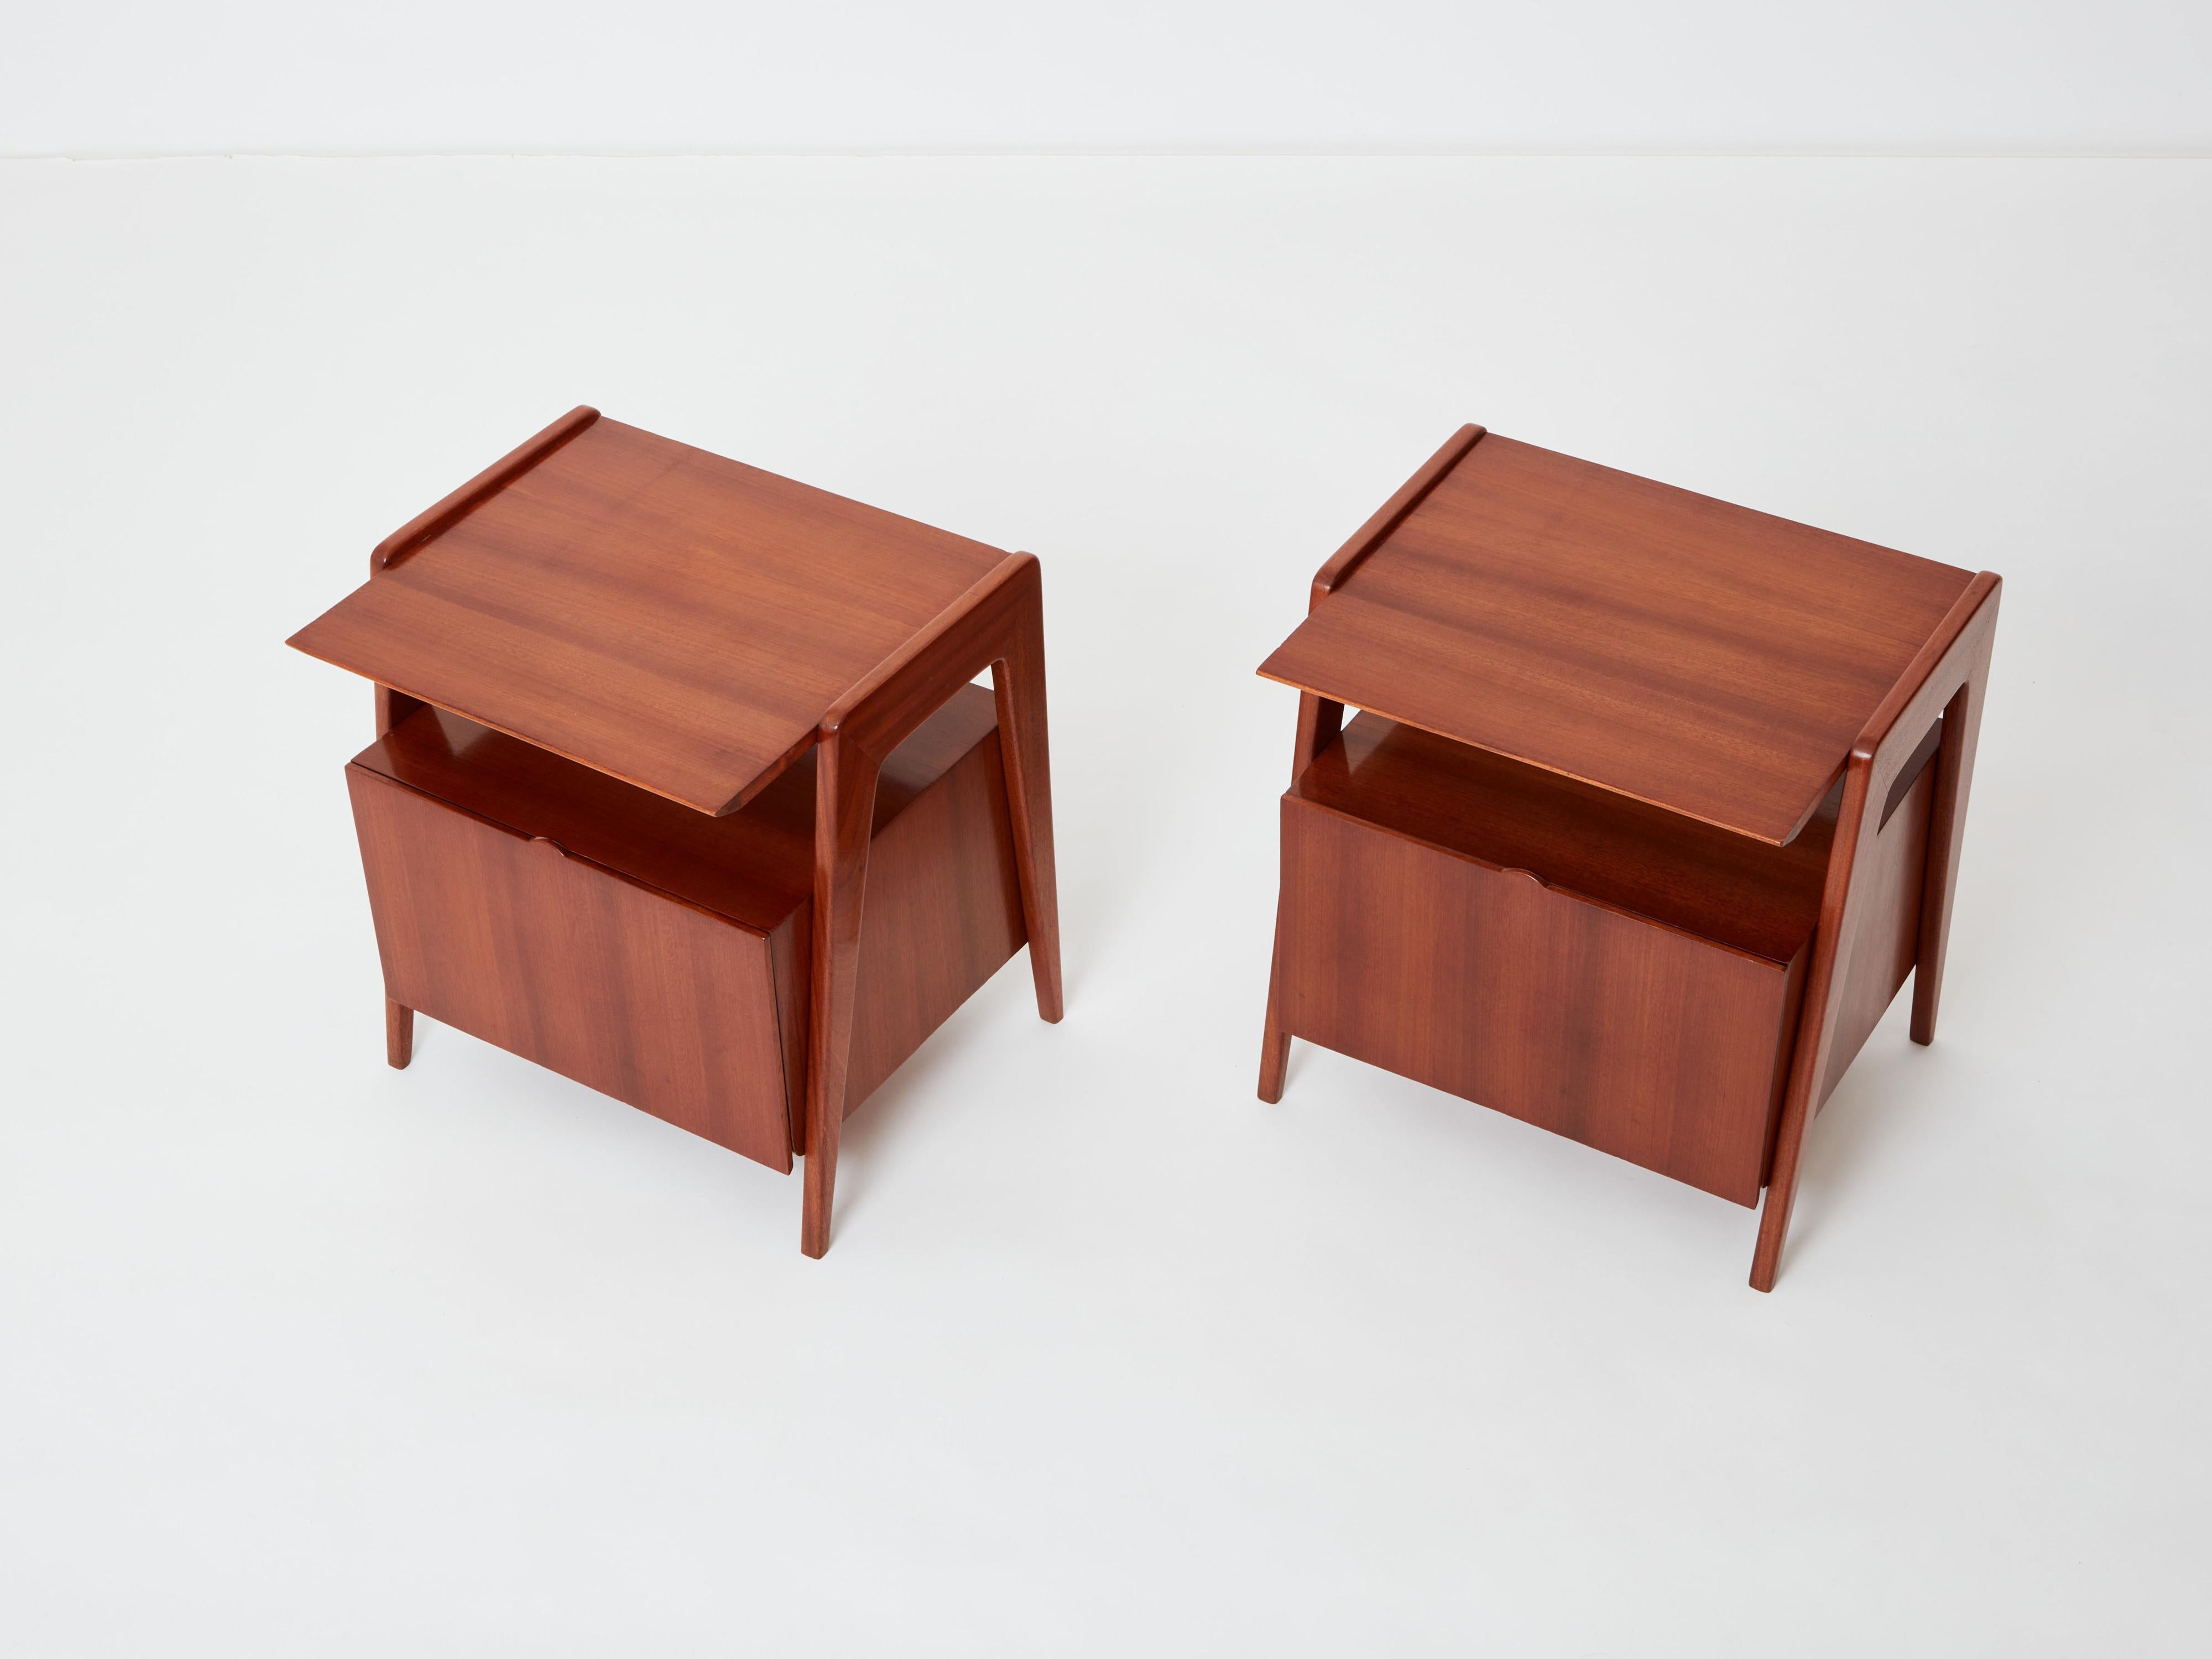 20th Century Silvio Cavatorta pair of mahogany wood nightstands 1950 For Sale